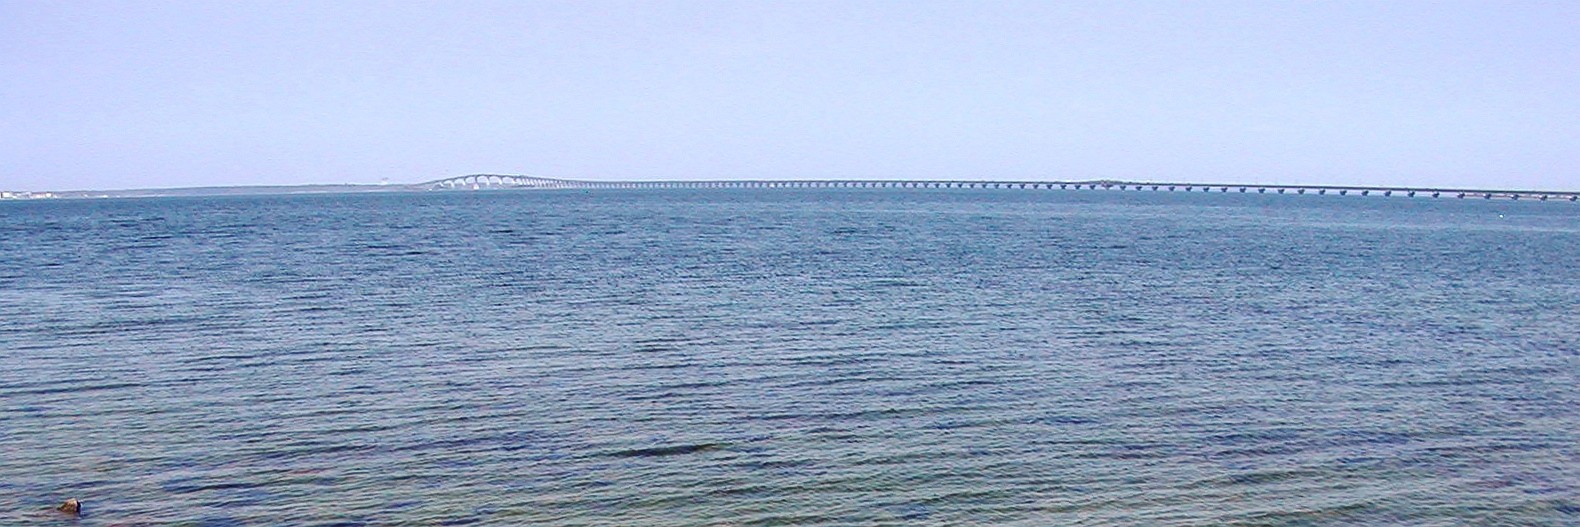 Kalmarsund with Öland Bridge